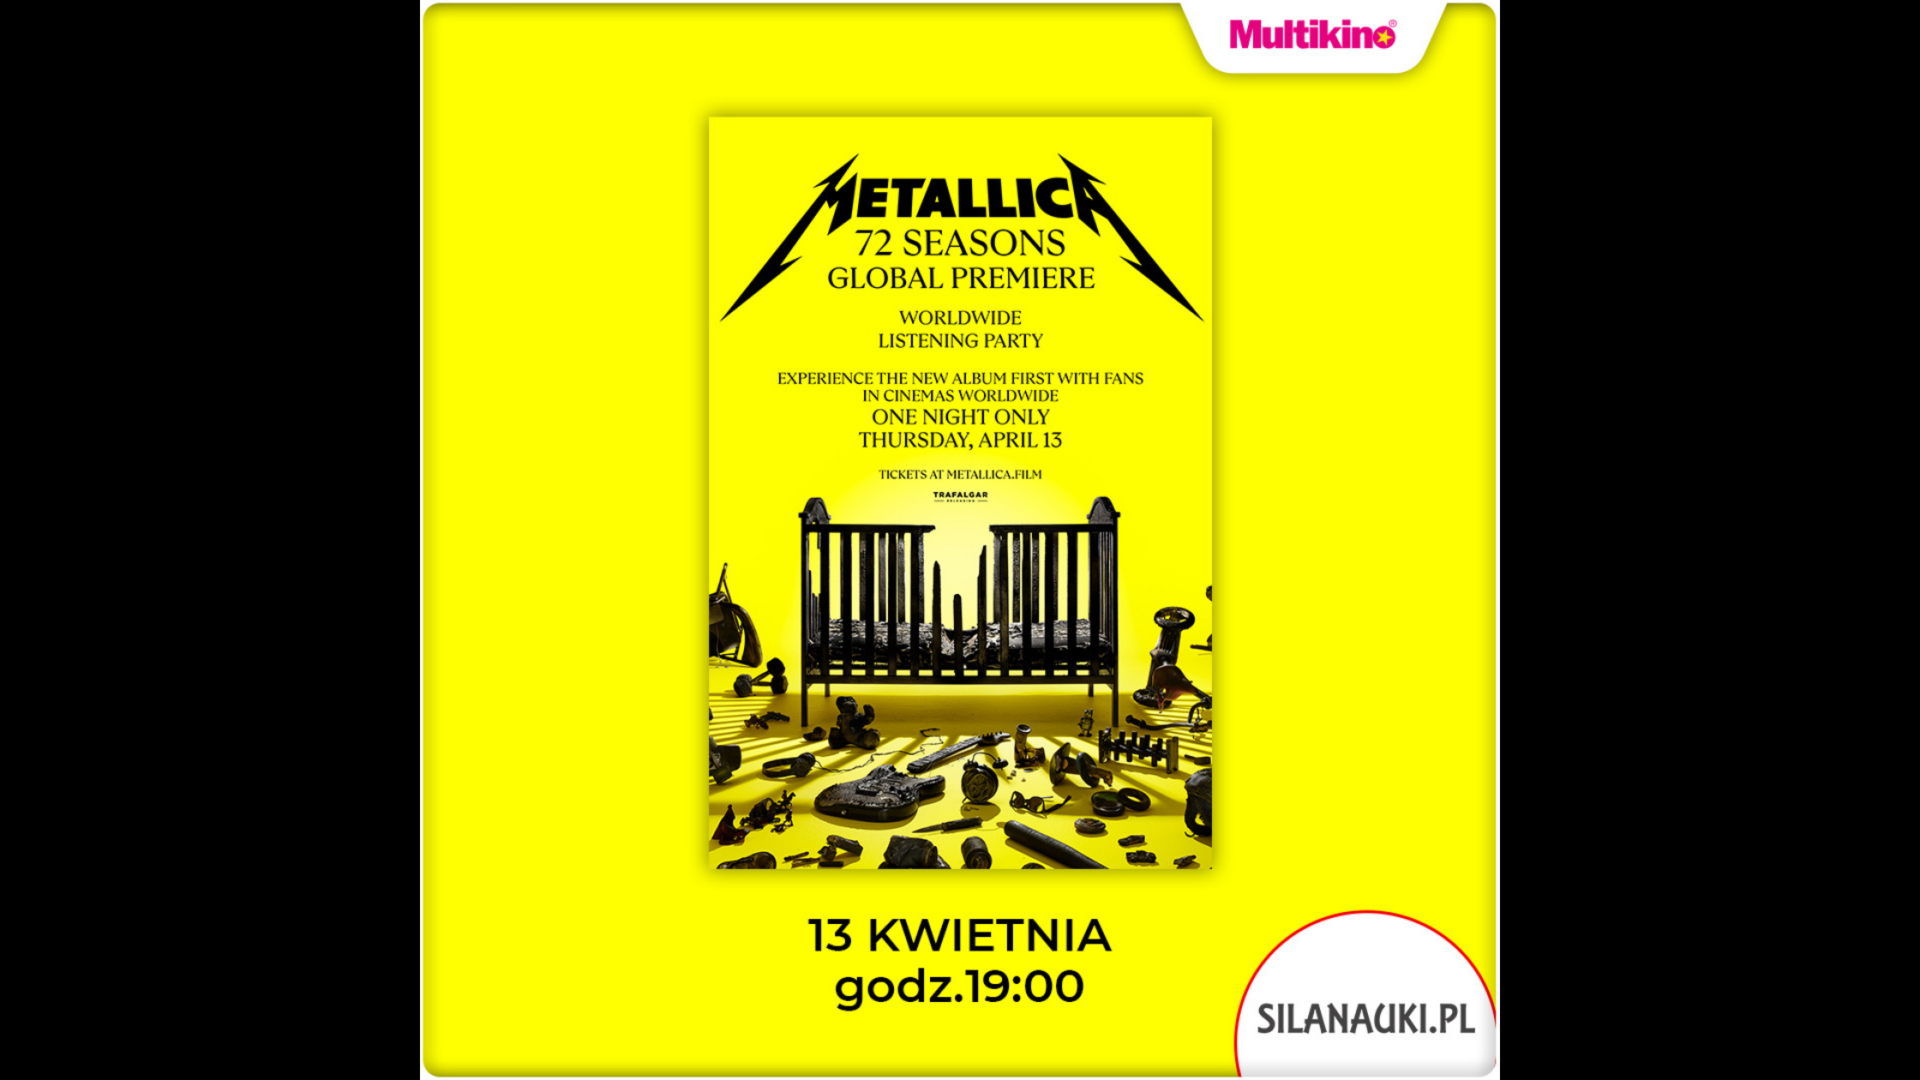 Relacja z premiery płyty “72 Seasons” zespołu Metallica w Multikinie